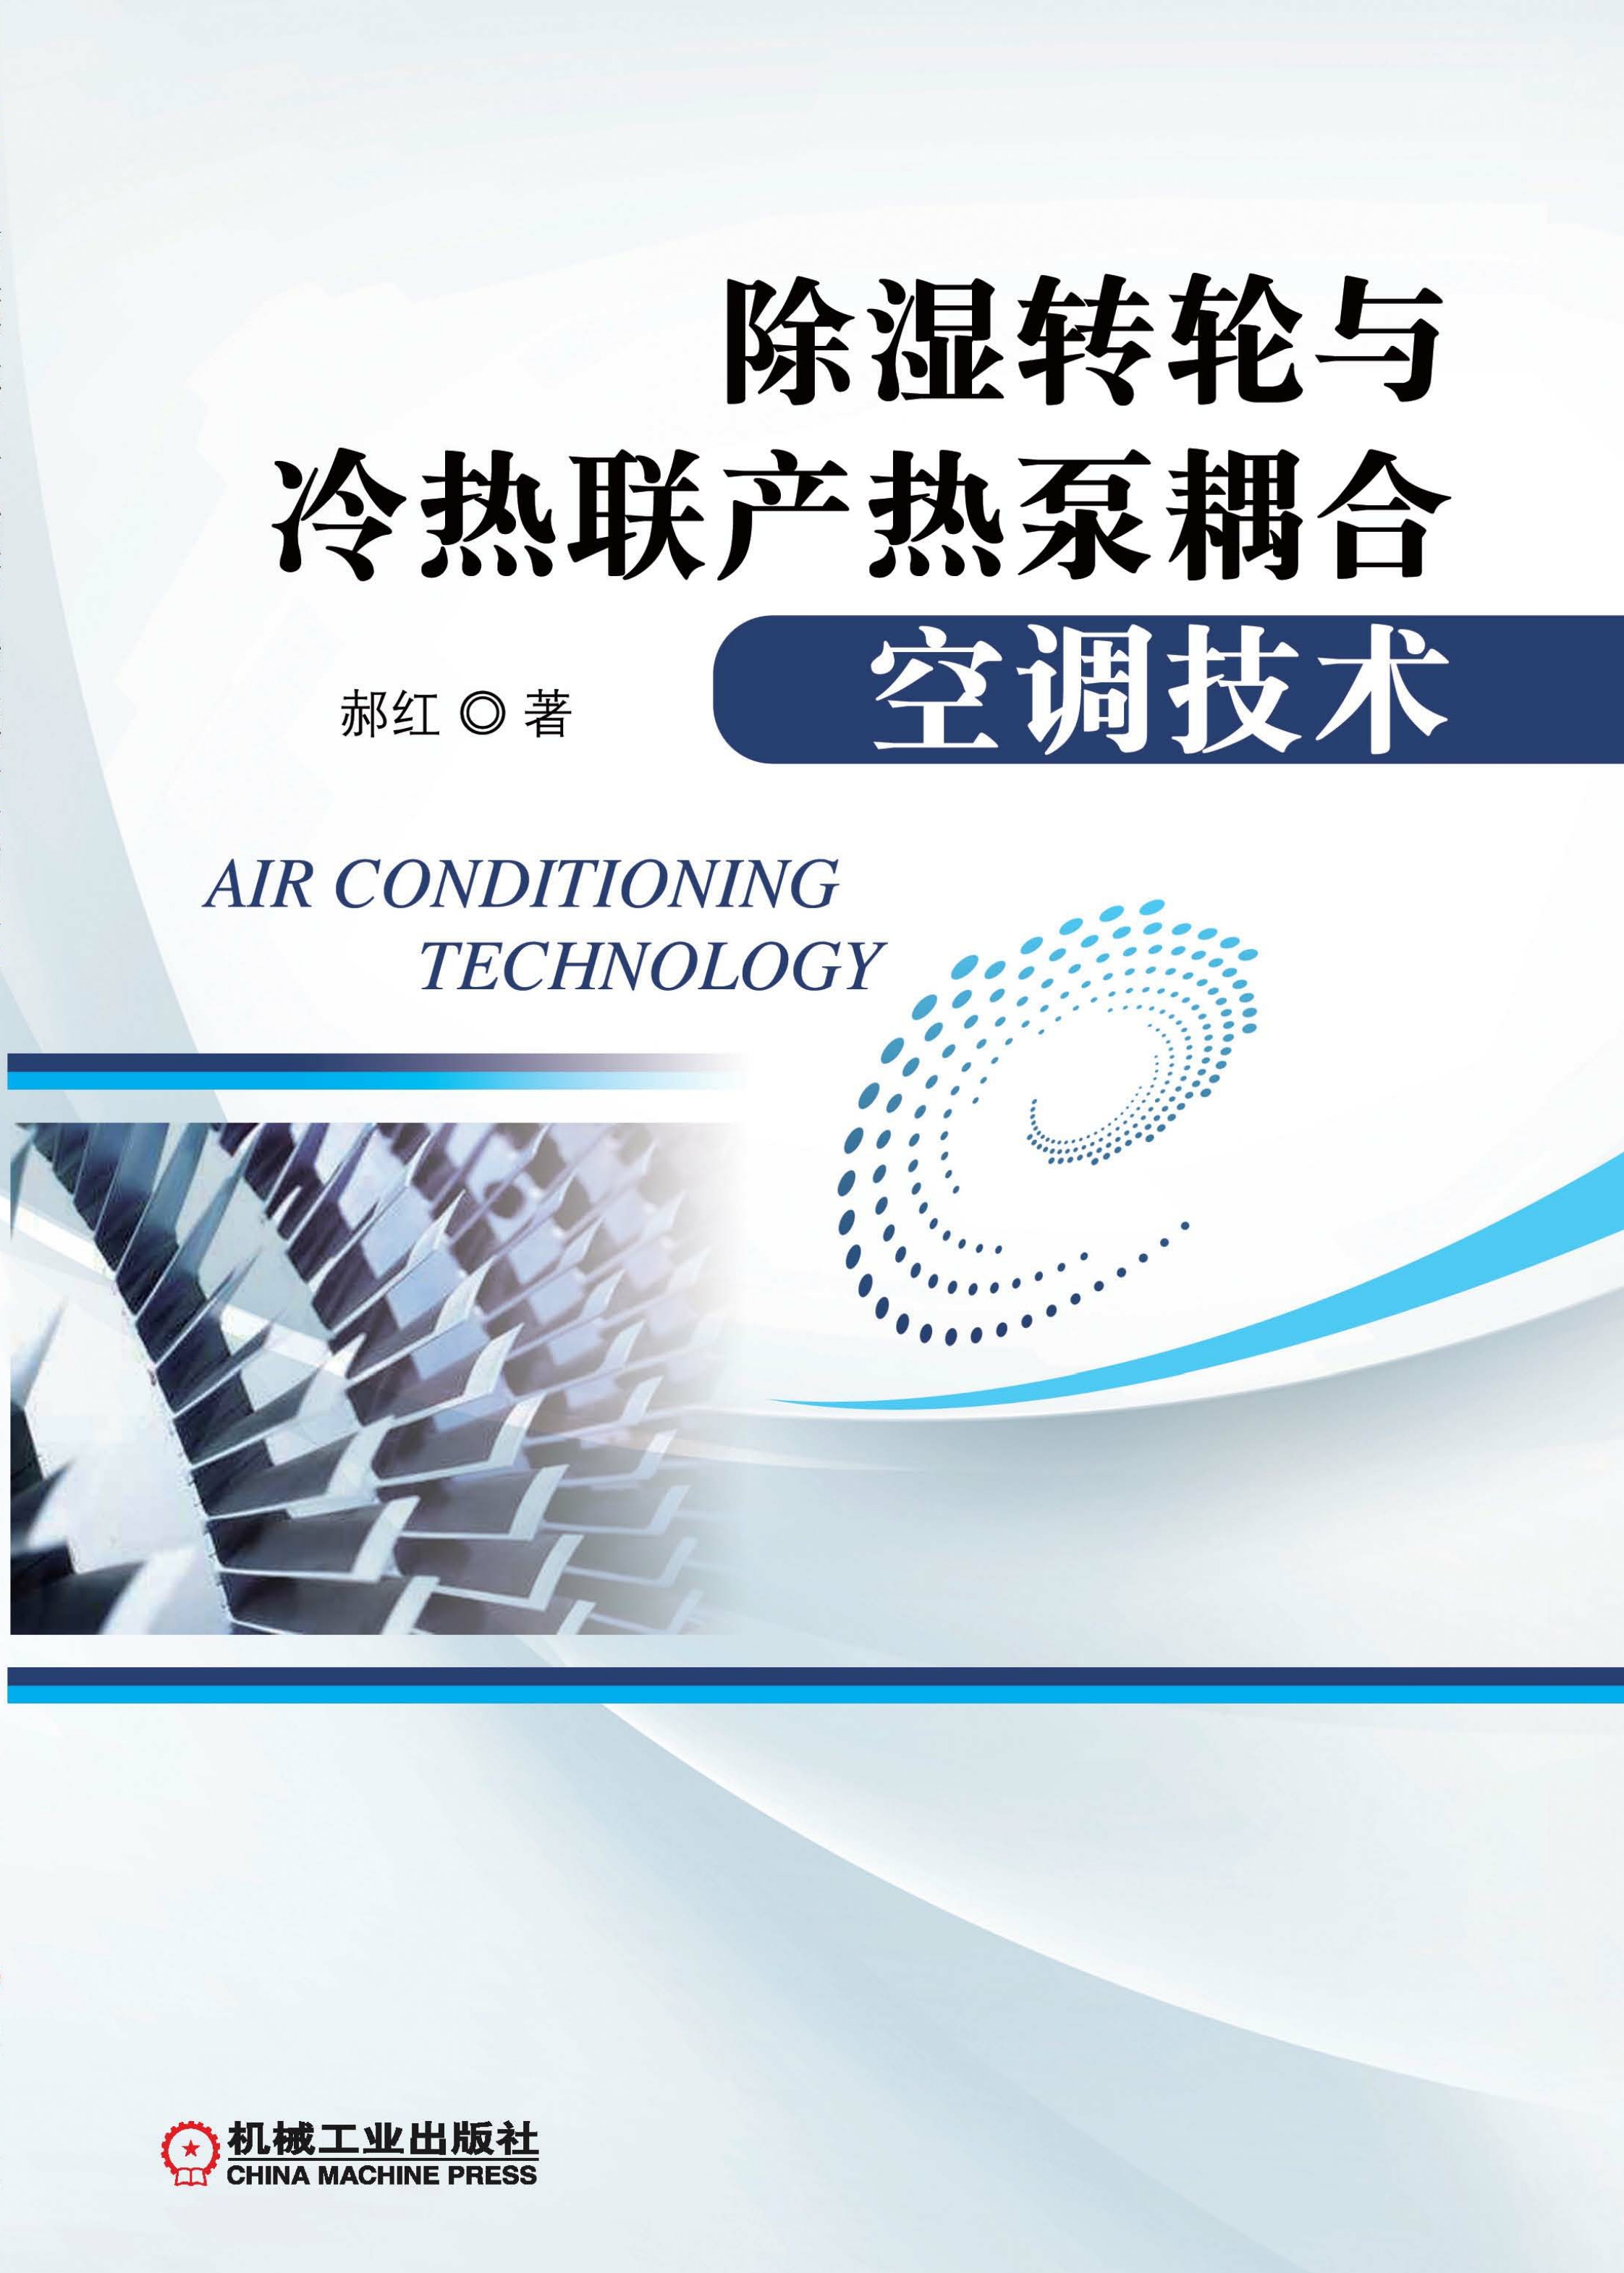 除湿转轮与冷热联产热泵耦合空调技术